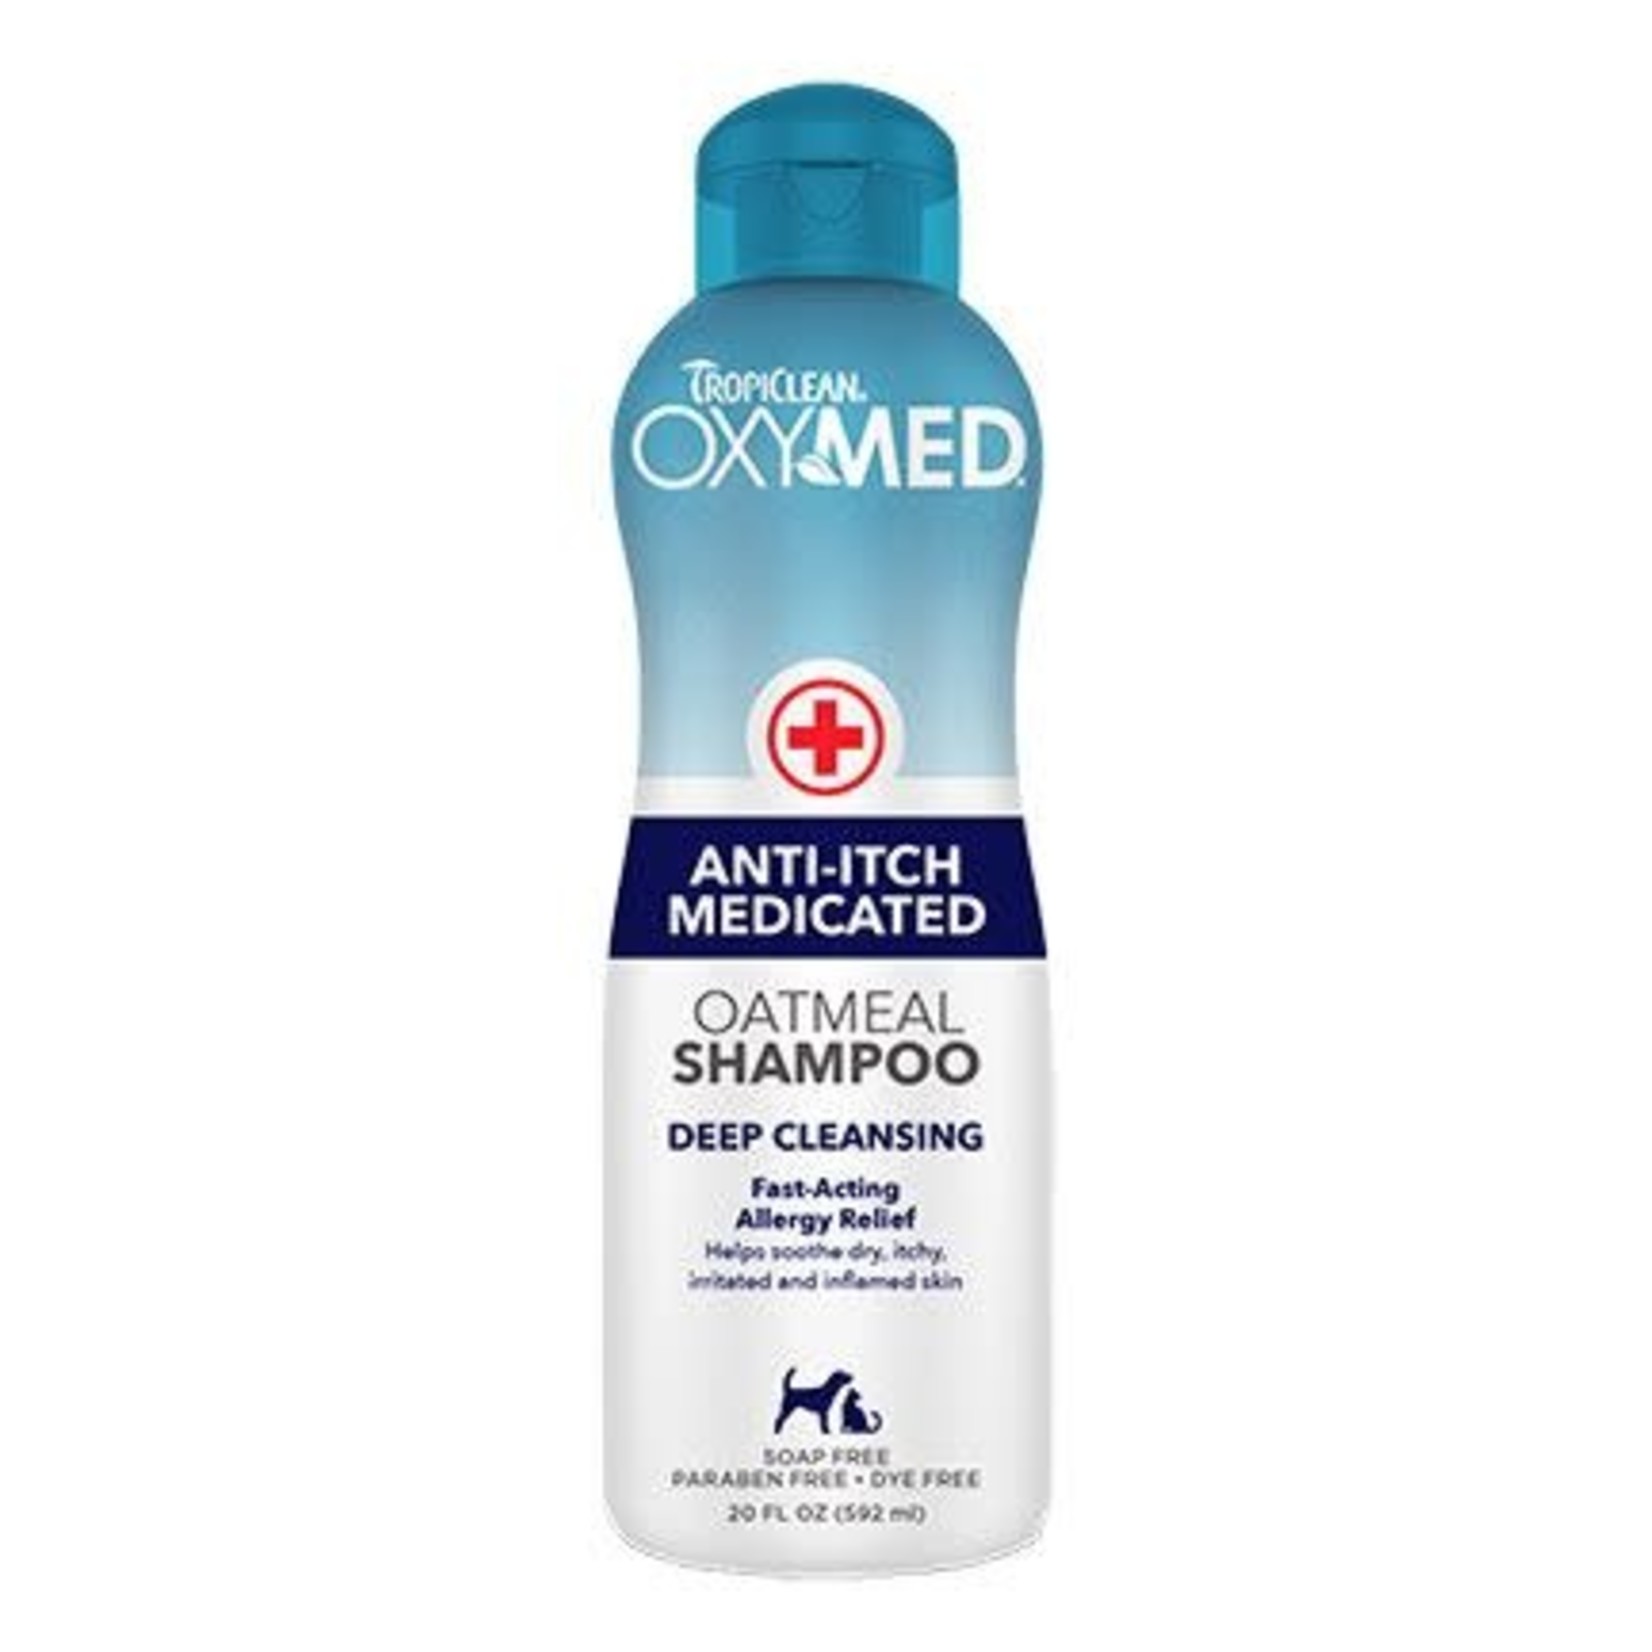 TropiClean Anti-Itch Medicated Oatmeal Shampoo